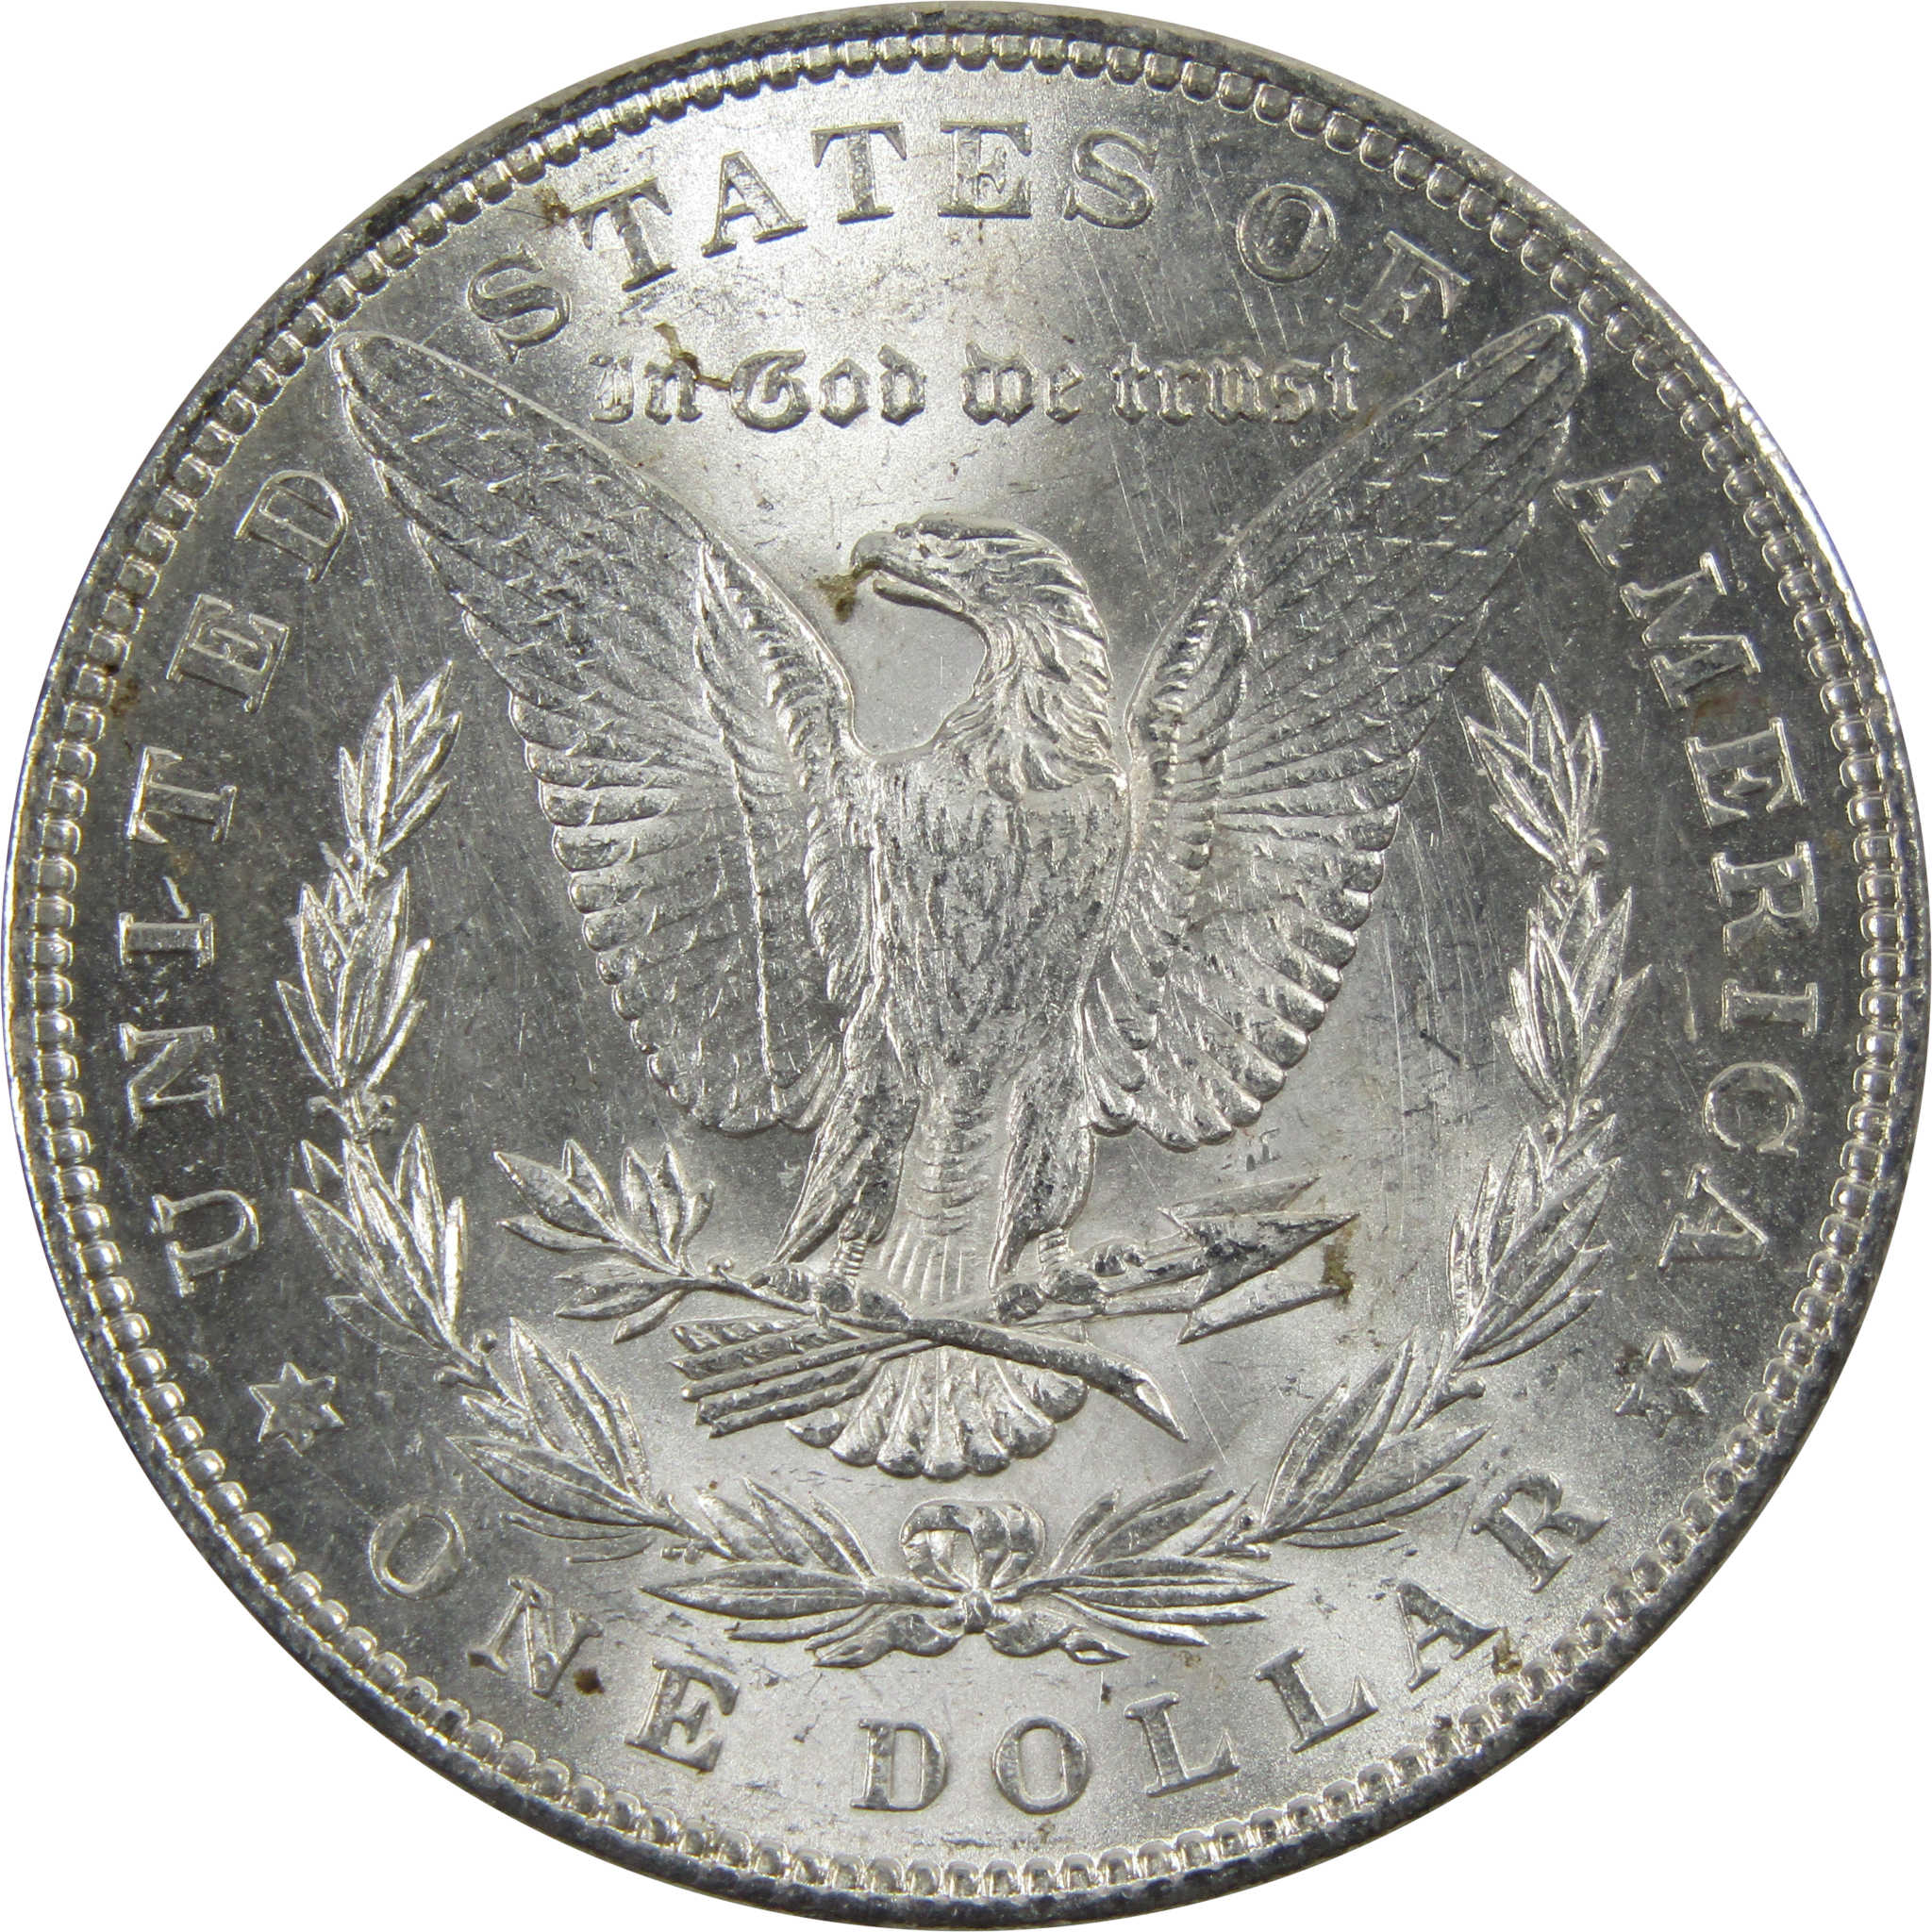 1883 Morgan Dollar BU Uncirculated 90% Silver $1 Coin SKU:I5172 - Morgan coin - Morgan silver dollar - Morgan silver dollar for sale - Profile Coins &amp; Collectibles